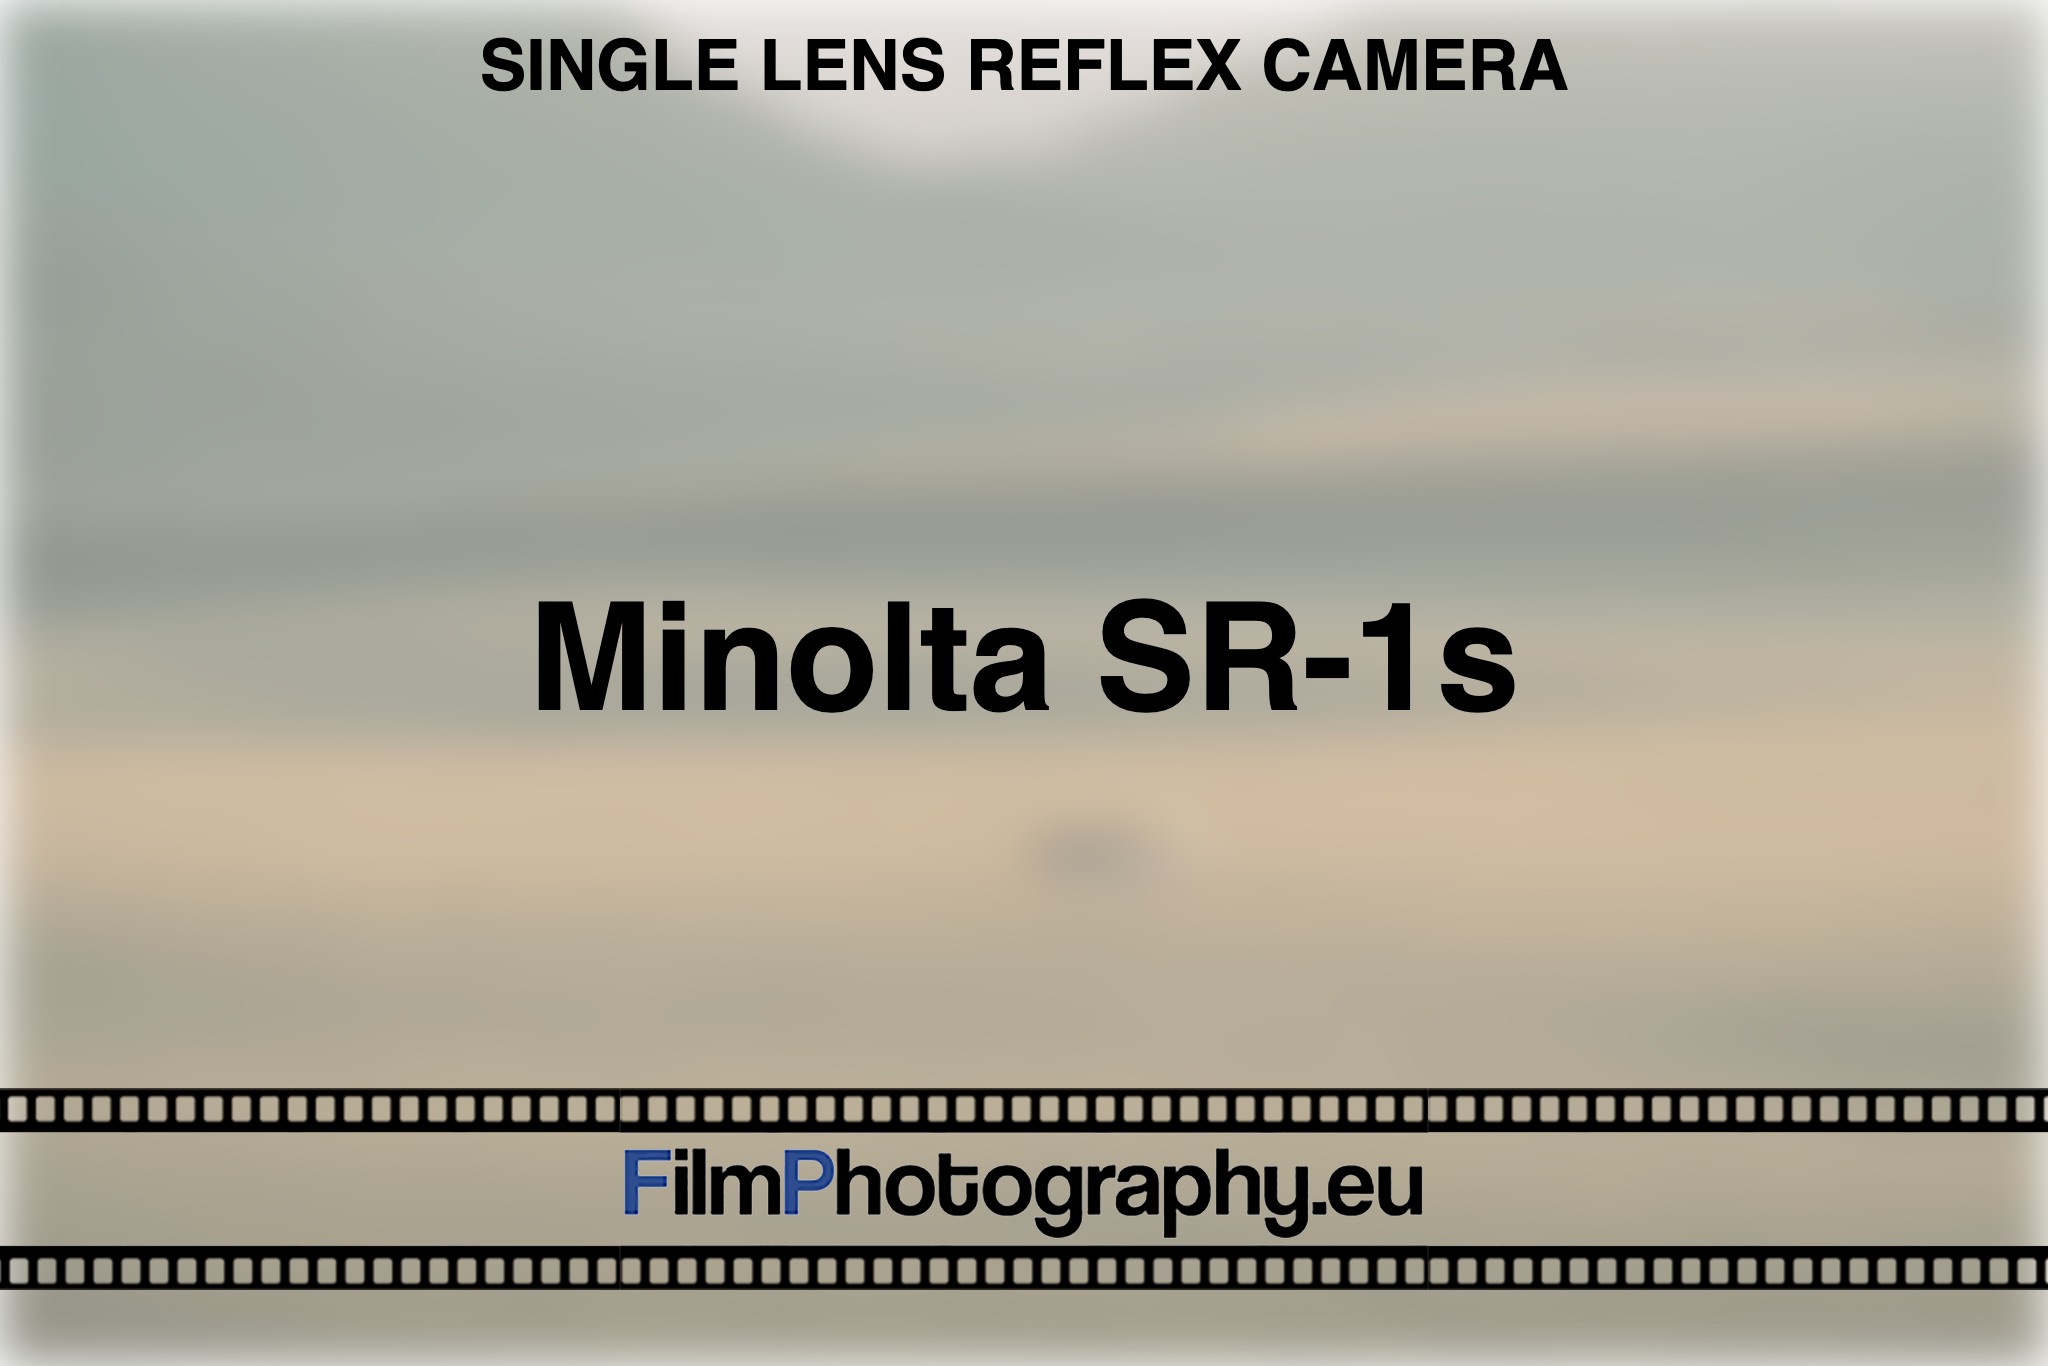 minolta-sr-1s-single-lens-reflex-camera-bnv